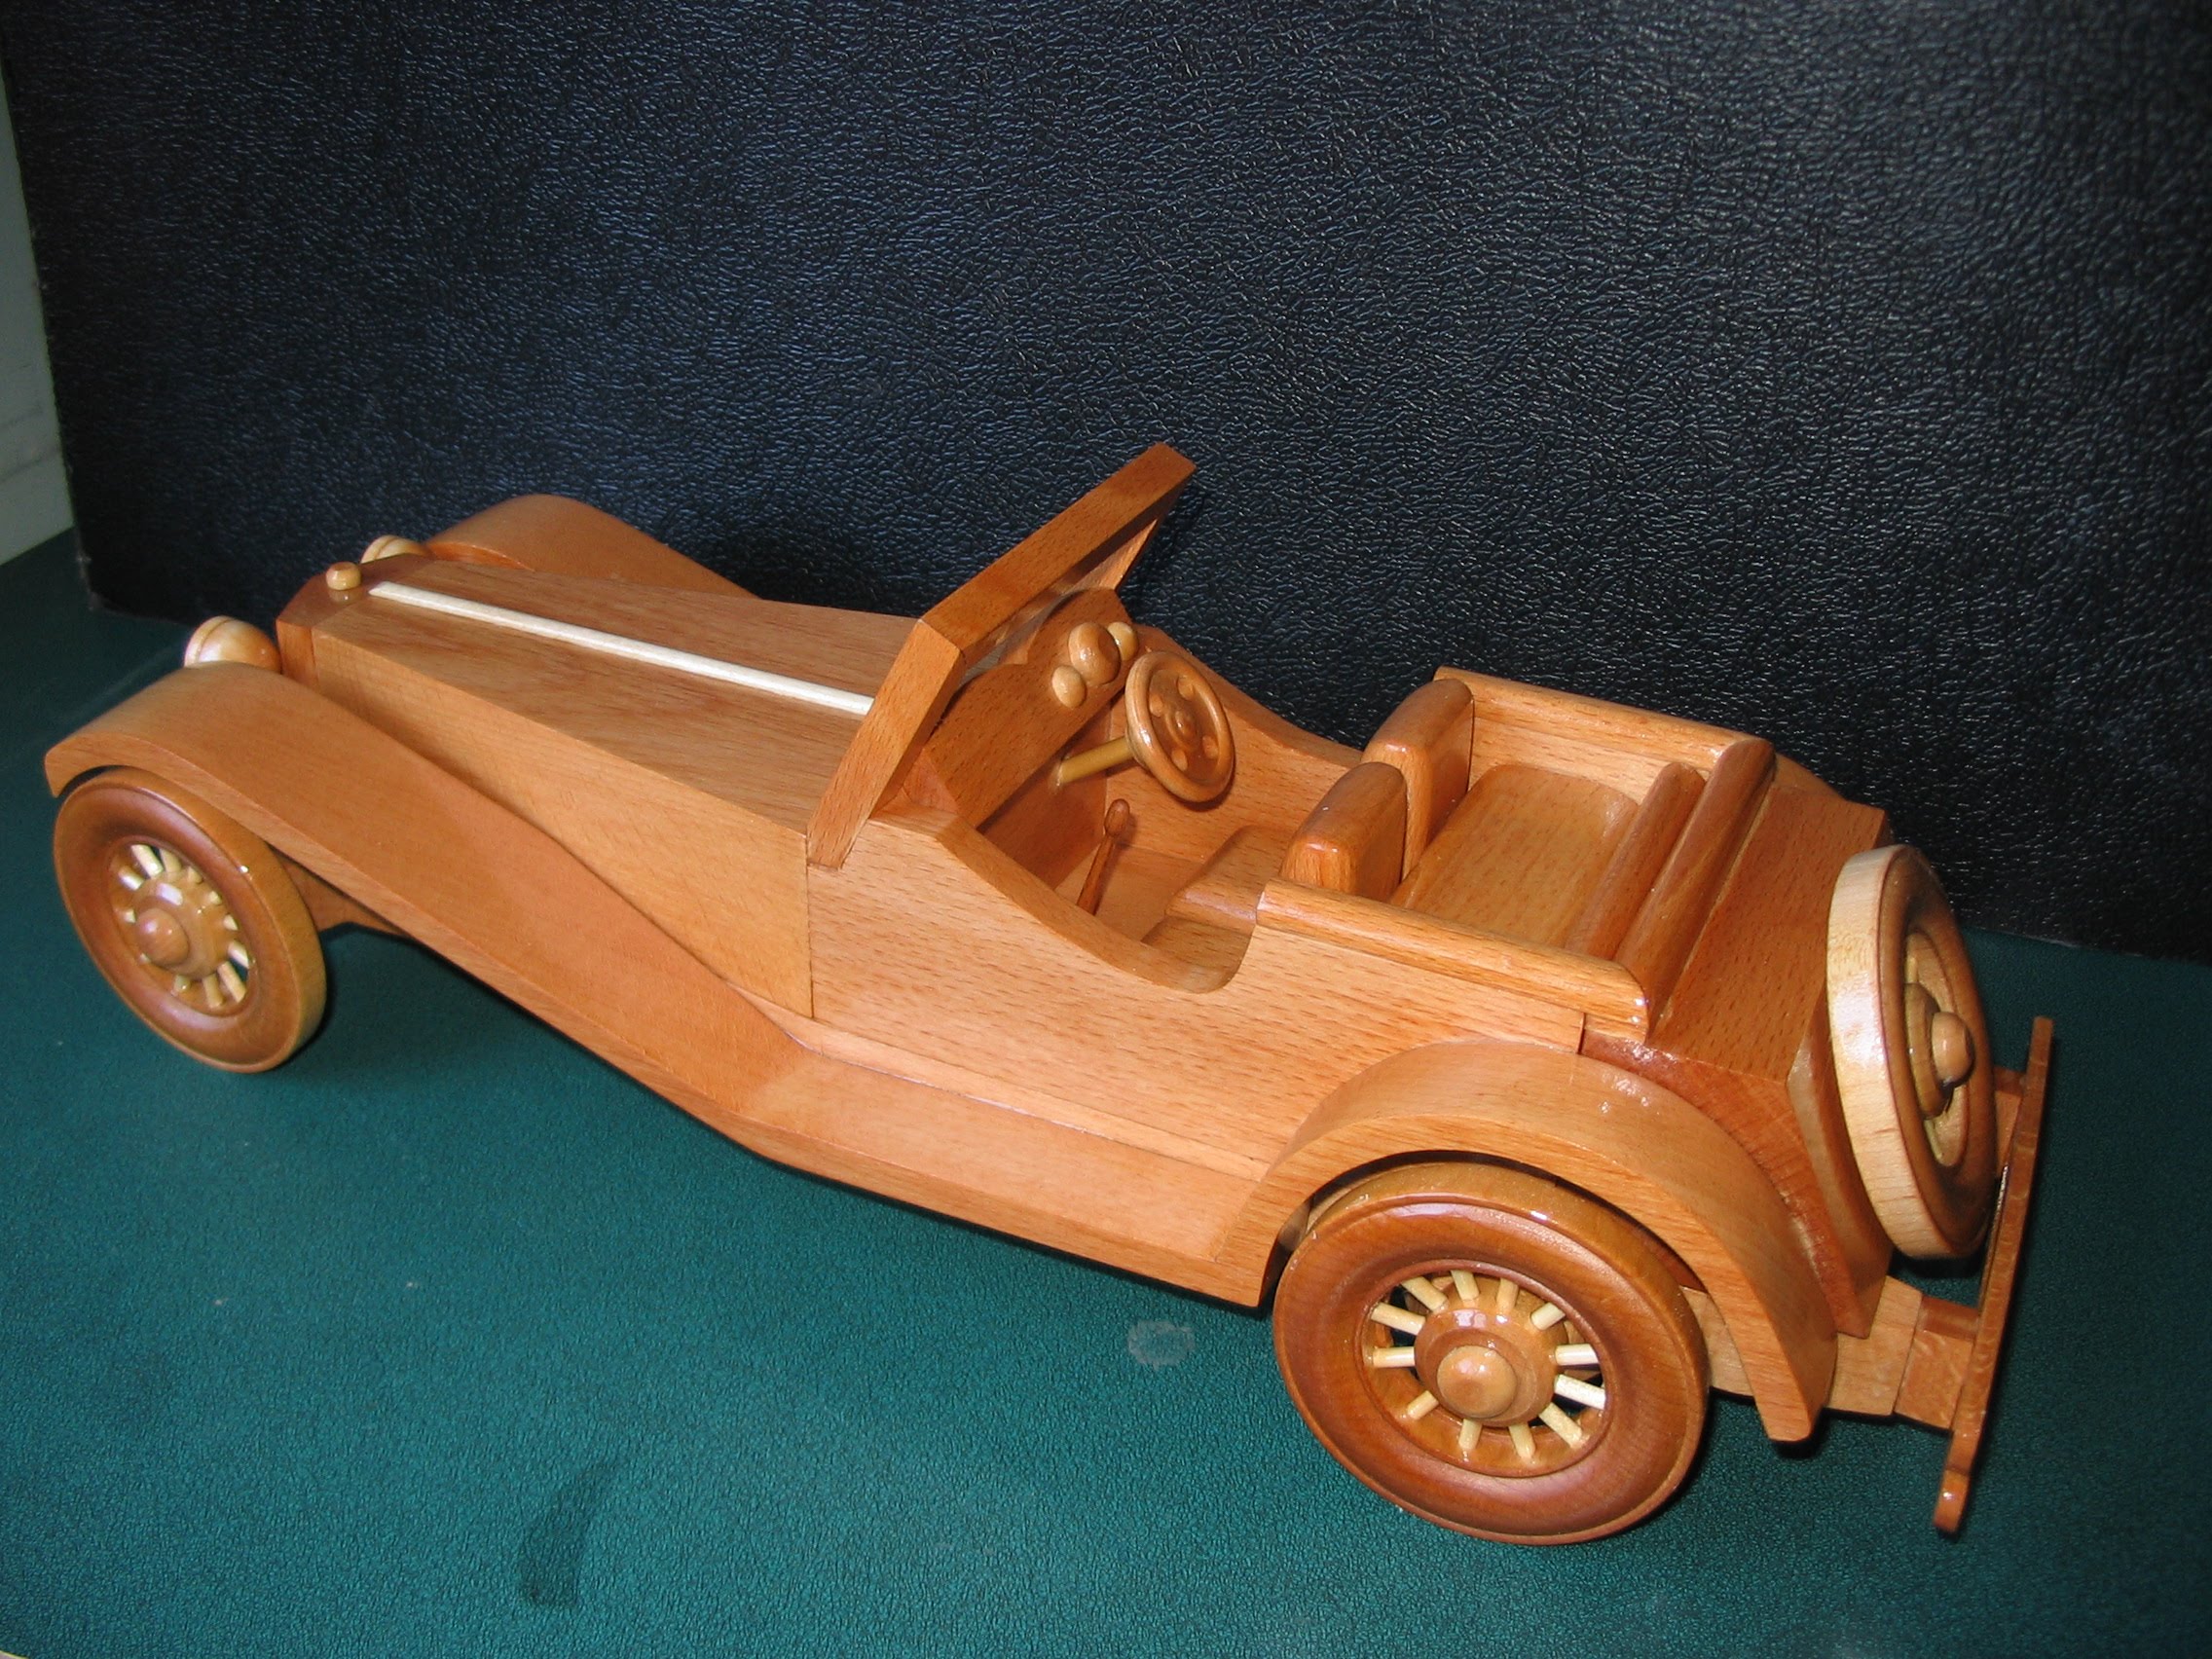 SS100 Jaguar Wooden Model - YouTube